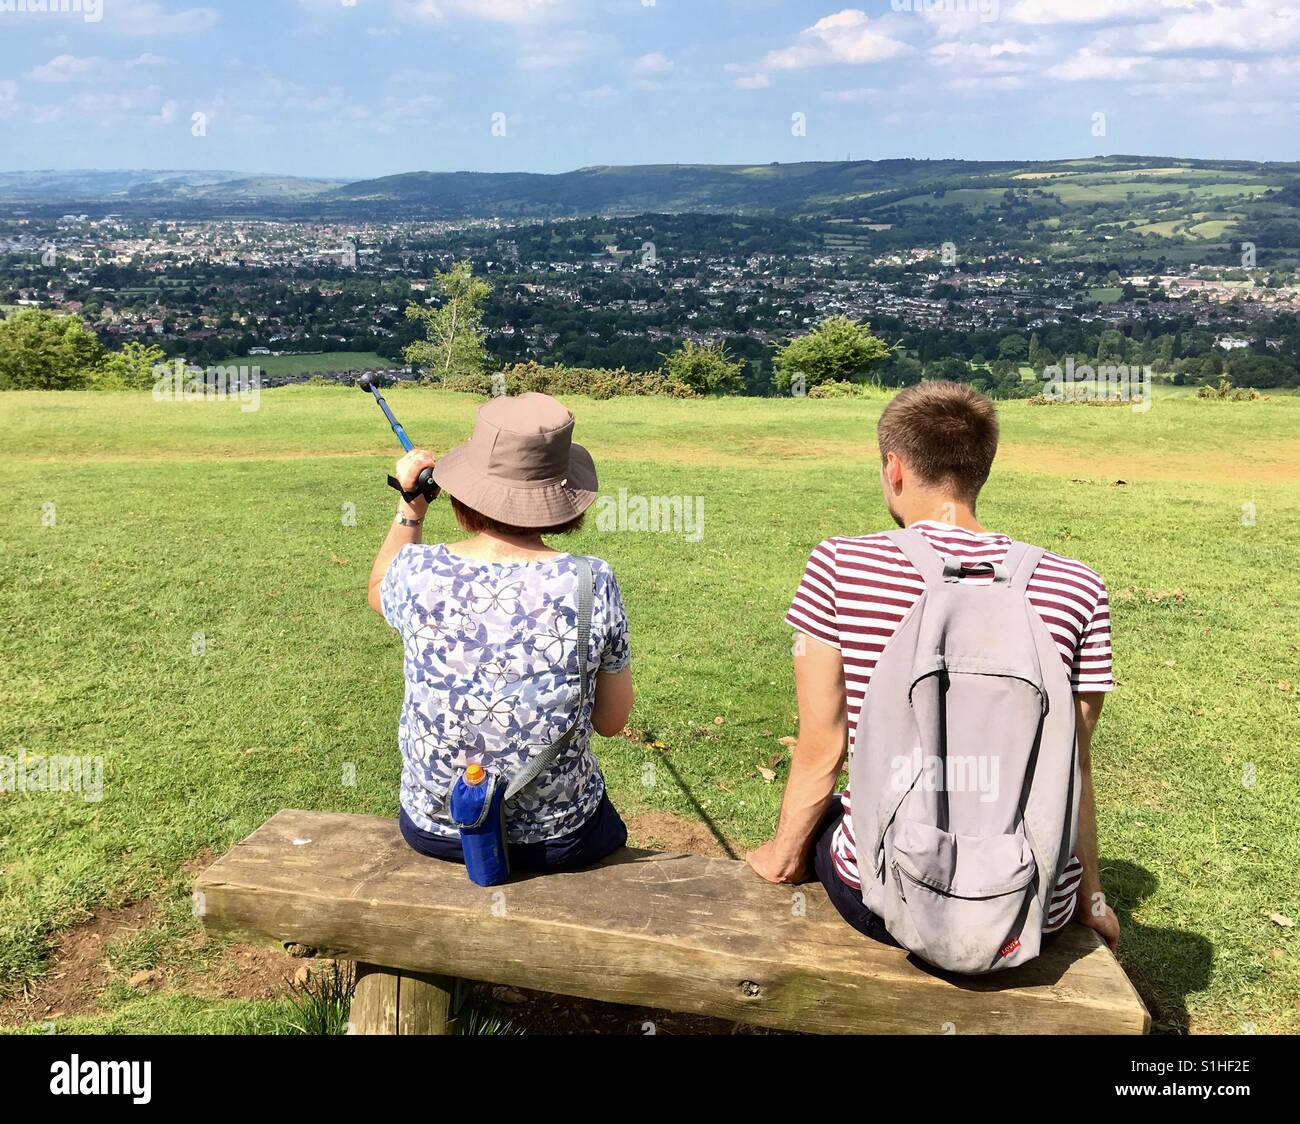 La mère et le fils assis sur le banc de la colline admiring view Banque D'Images